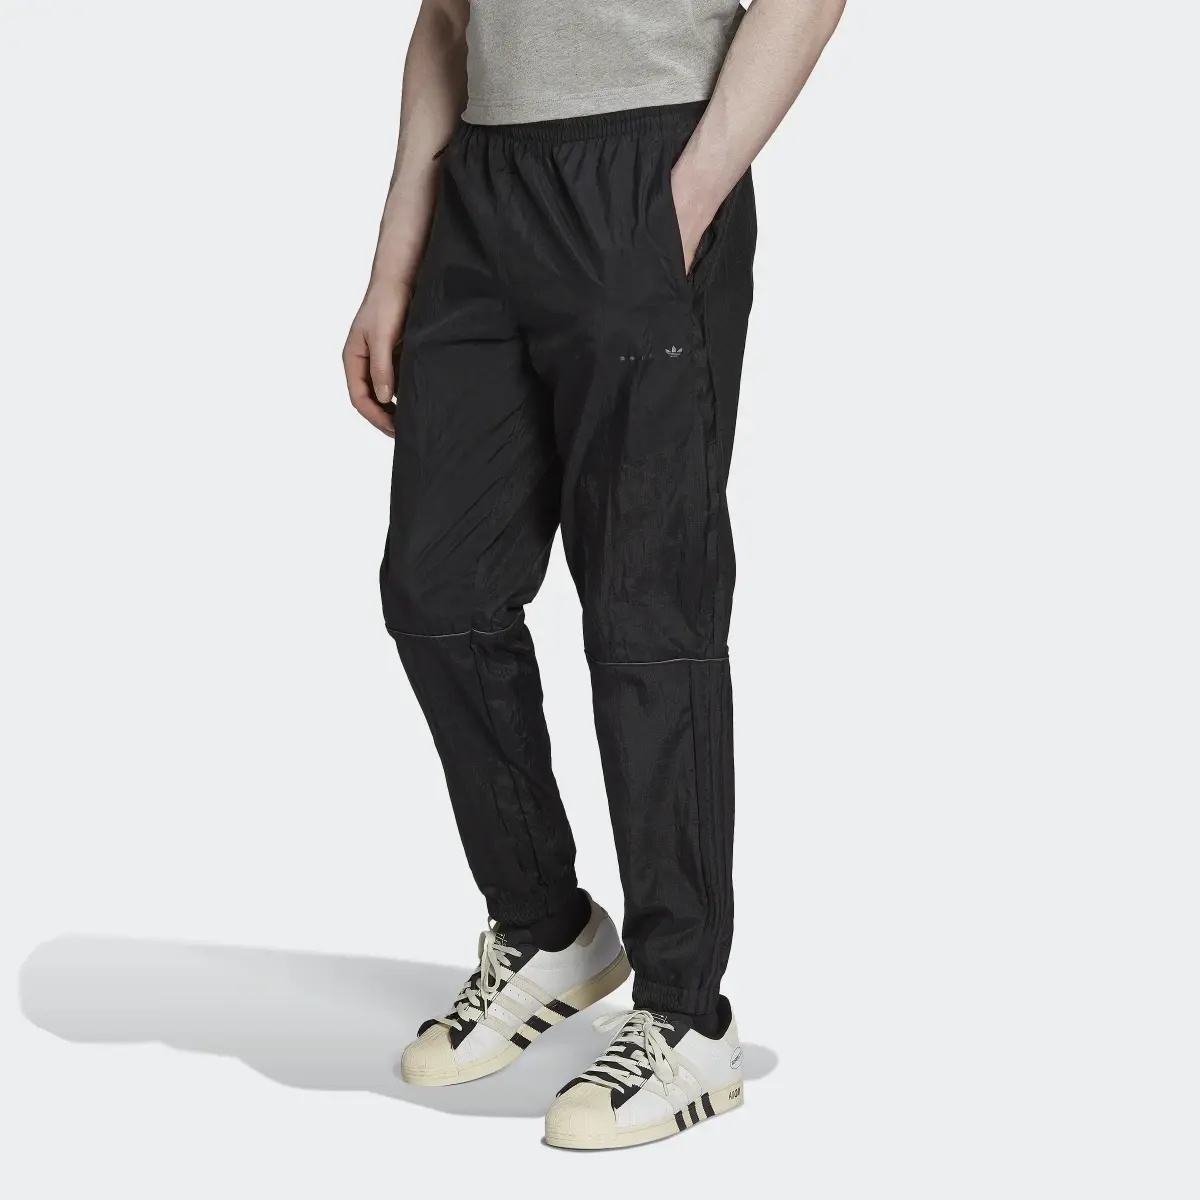 Adidas Pantalón Reveal Material Mix. 1